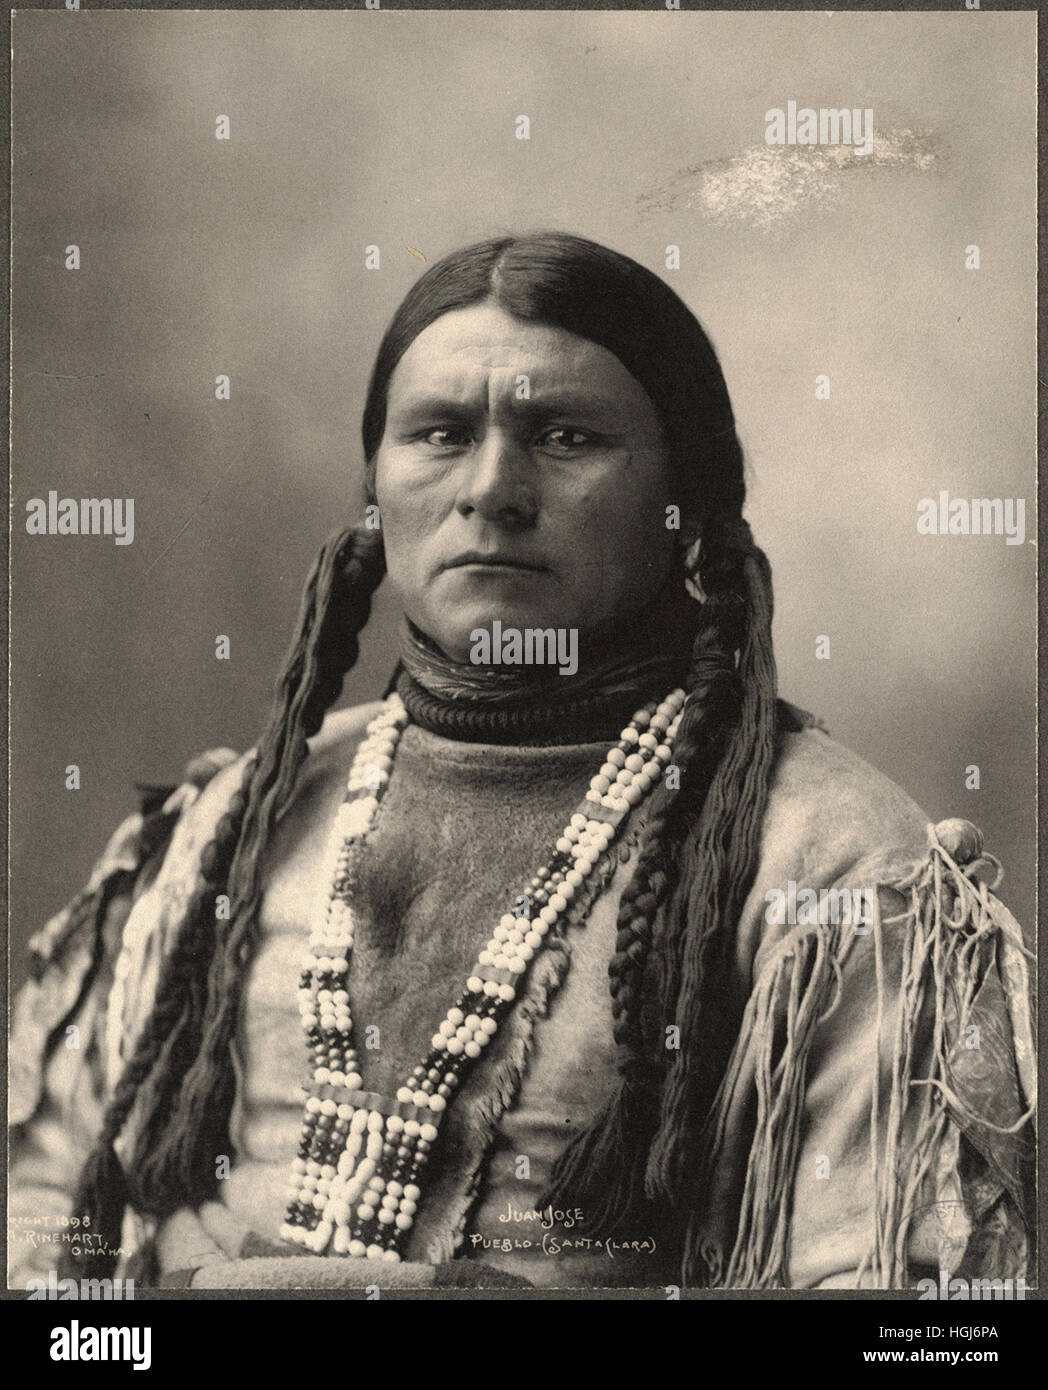 Juan José, Pueblo (Santa Clara) - 1898 Indian Congress - Foto : Frank A. Rinehart Foto de stock